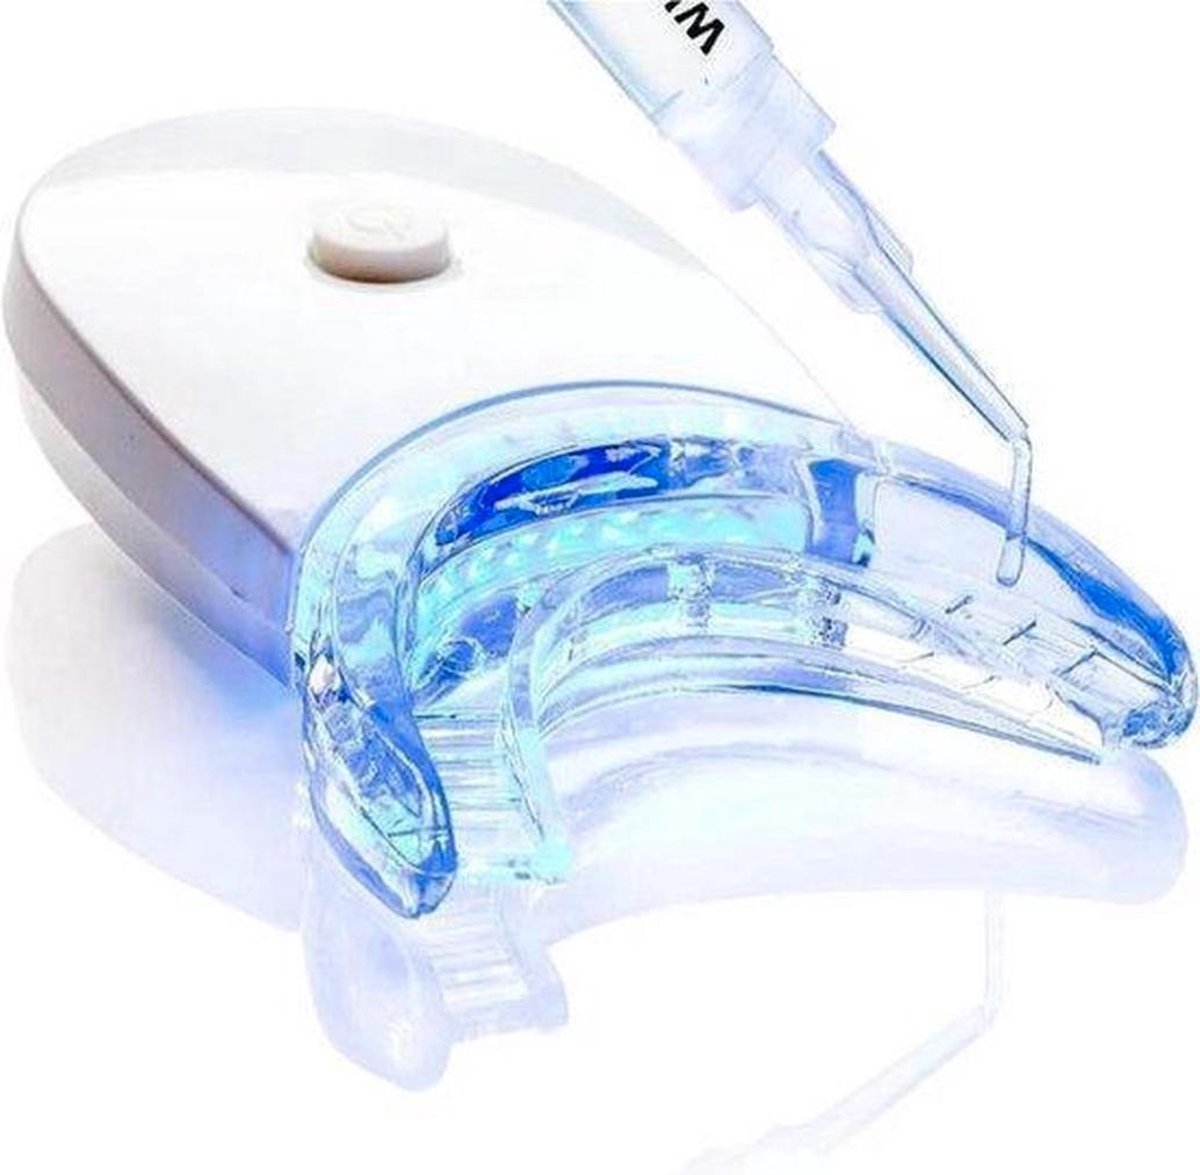 Tanden Bleken - Tandenblekers - Tandenbleekset - Tandbleekset Premium - Tanden Bleekset - Tandbleekset Premium - 3D LED - Zonder Peroxide - 3 Gelspuiten - Veilig - Thuis bleken - Witte Tanden - Professionele Teeth Whitening - Tandenbleekset